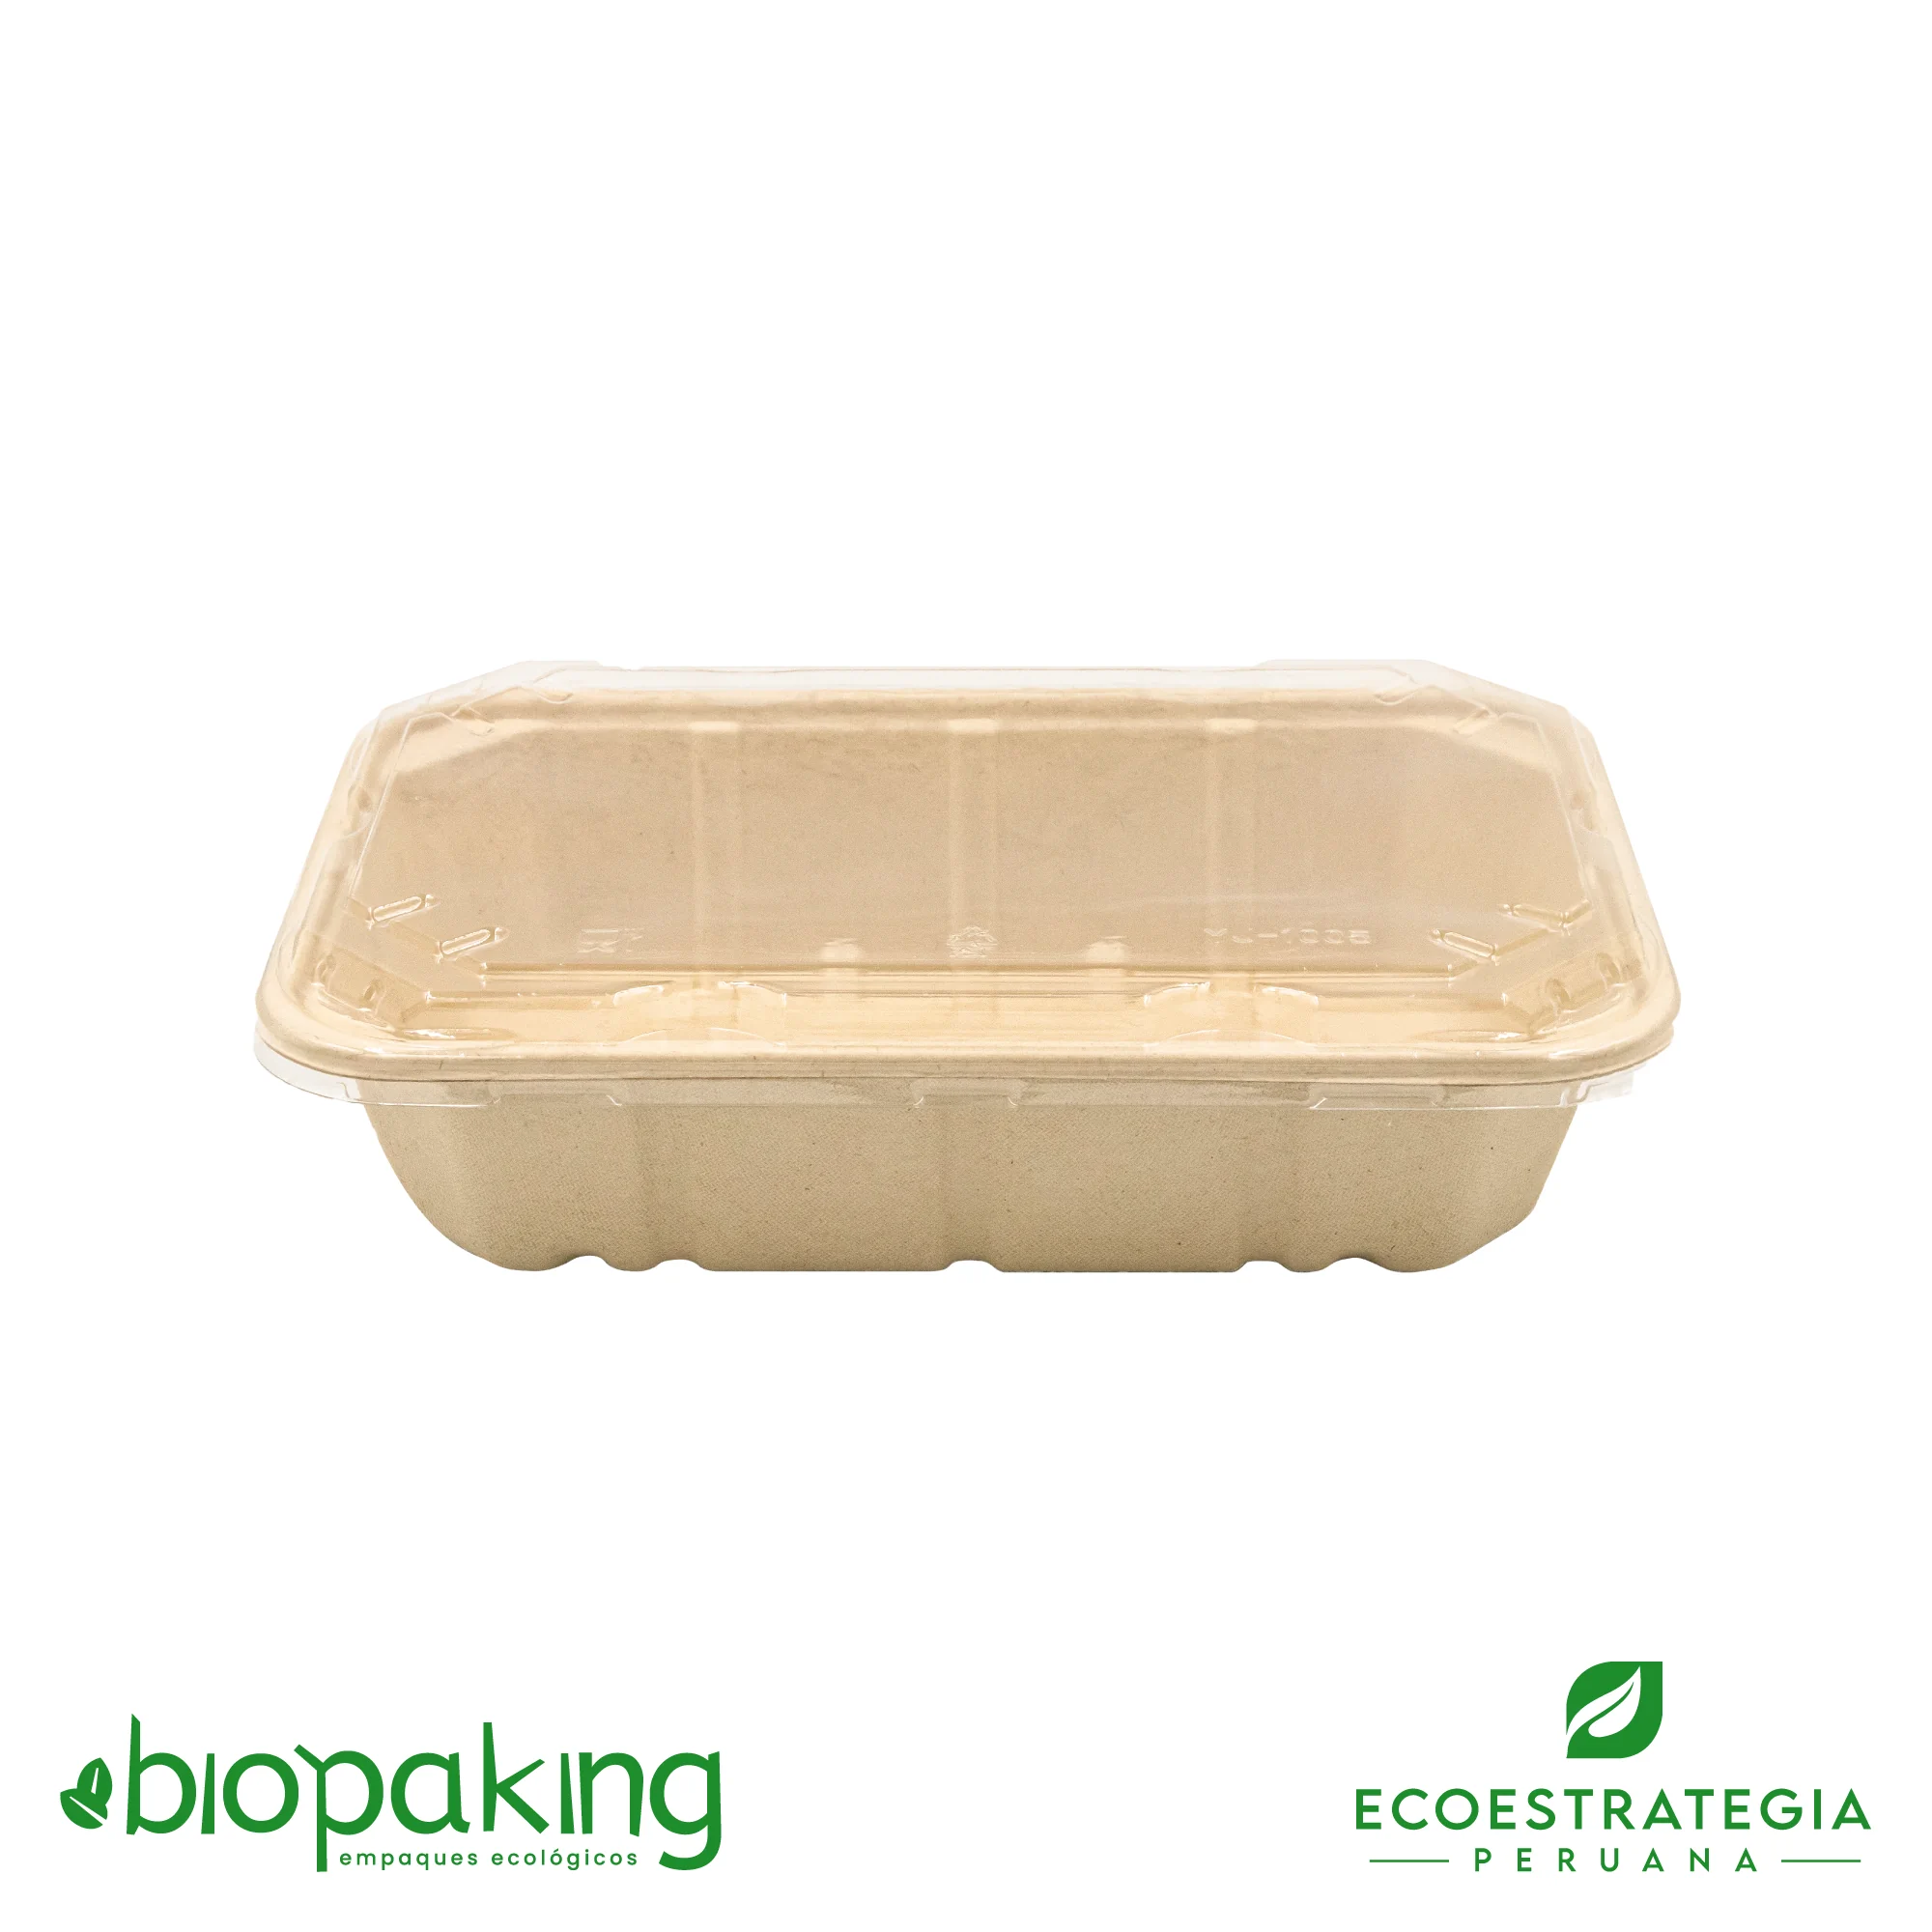 Esta bandeja biodegradable está hecho de fibra de trigo y tiene una capacidad de 1300ml. Envases descartables con gramaje ideal, cotiza tus tapers ecológicos